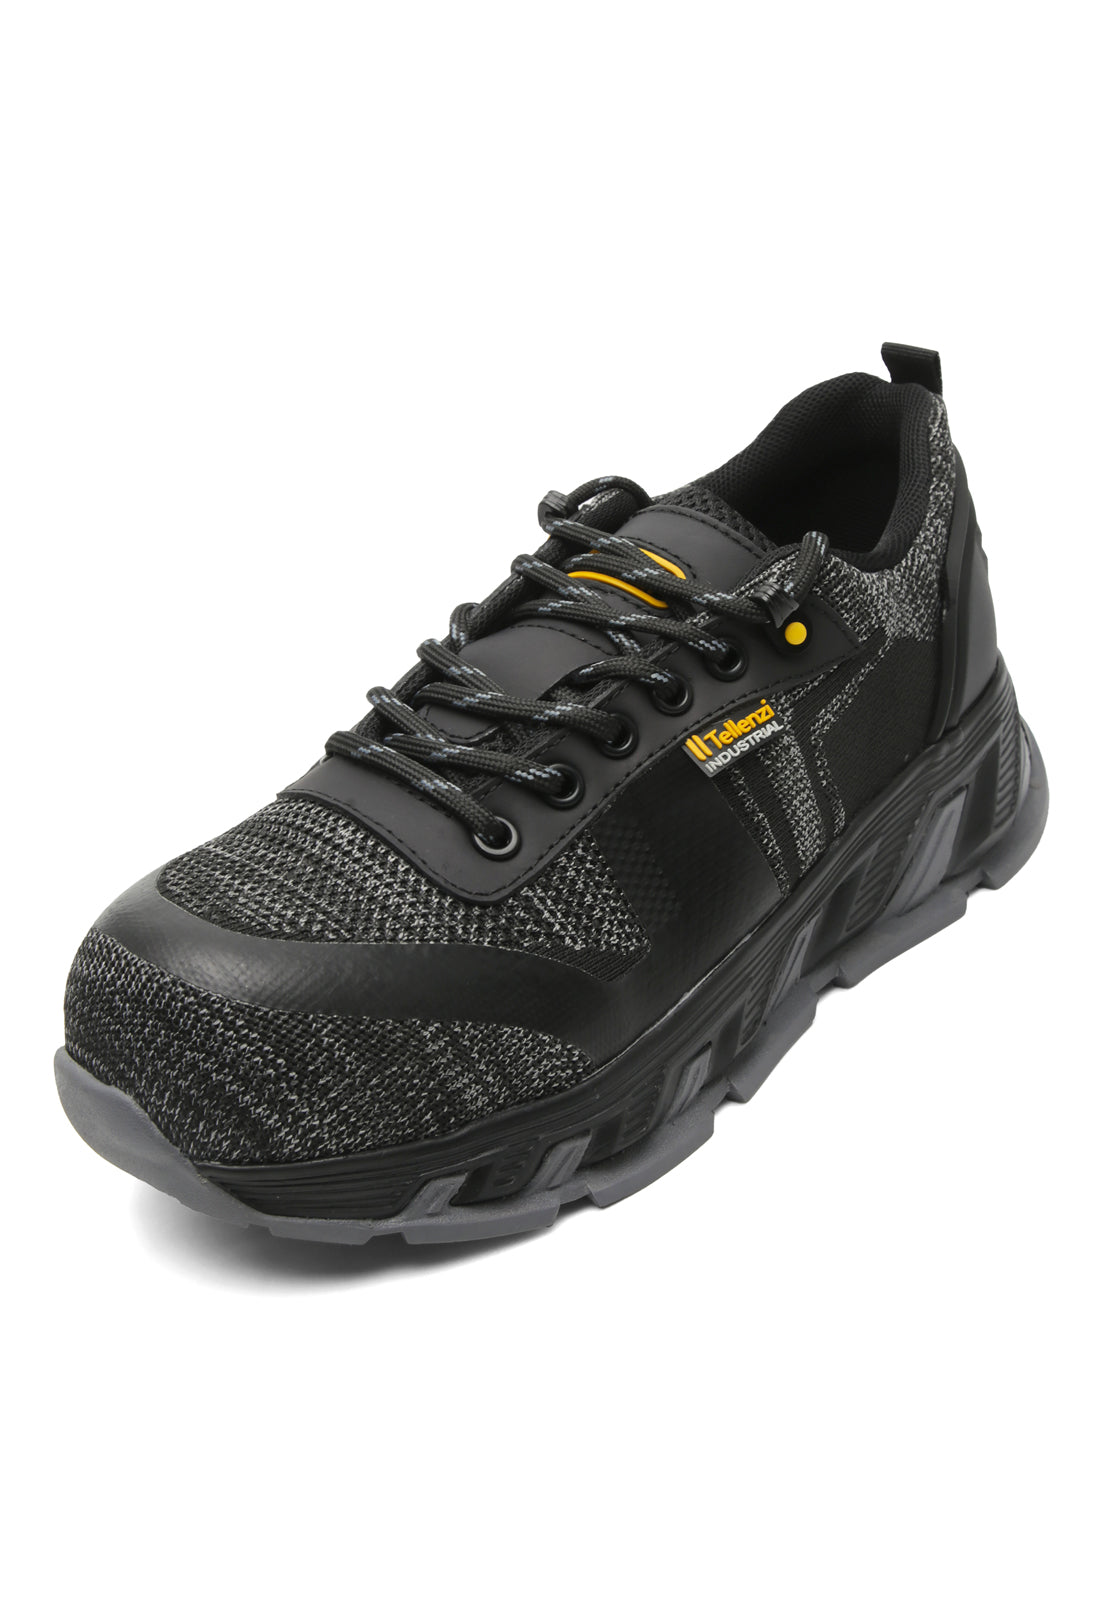 Zapatos Hombre Outdoor Industrial Tellenzi Negro 77318